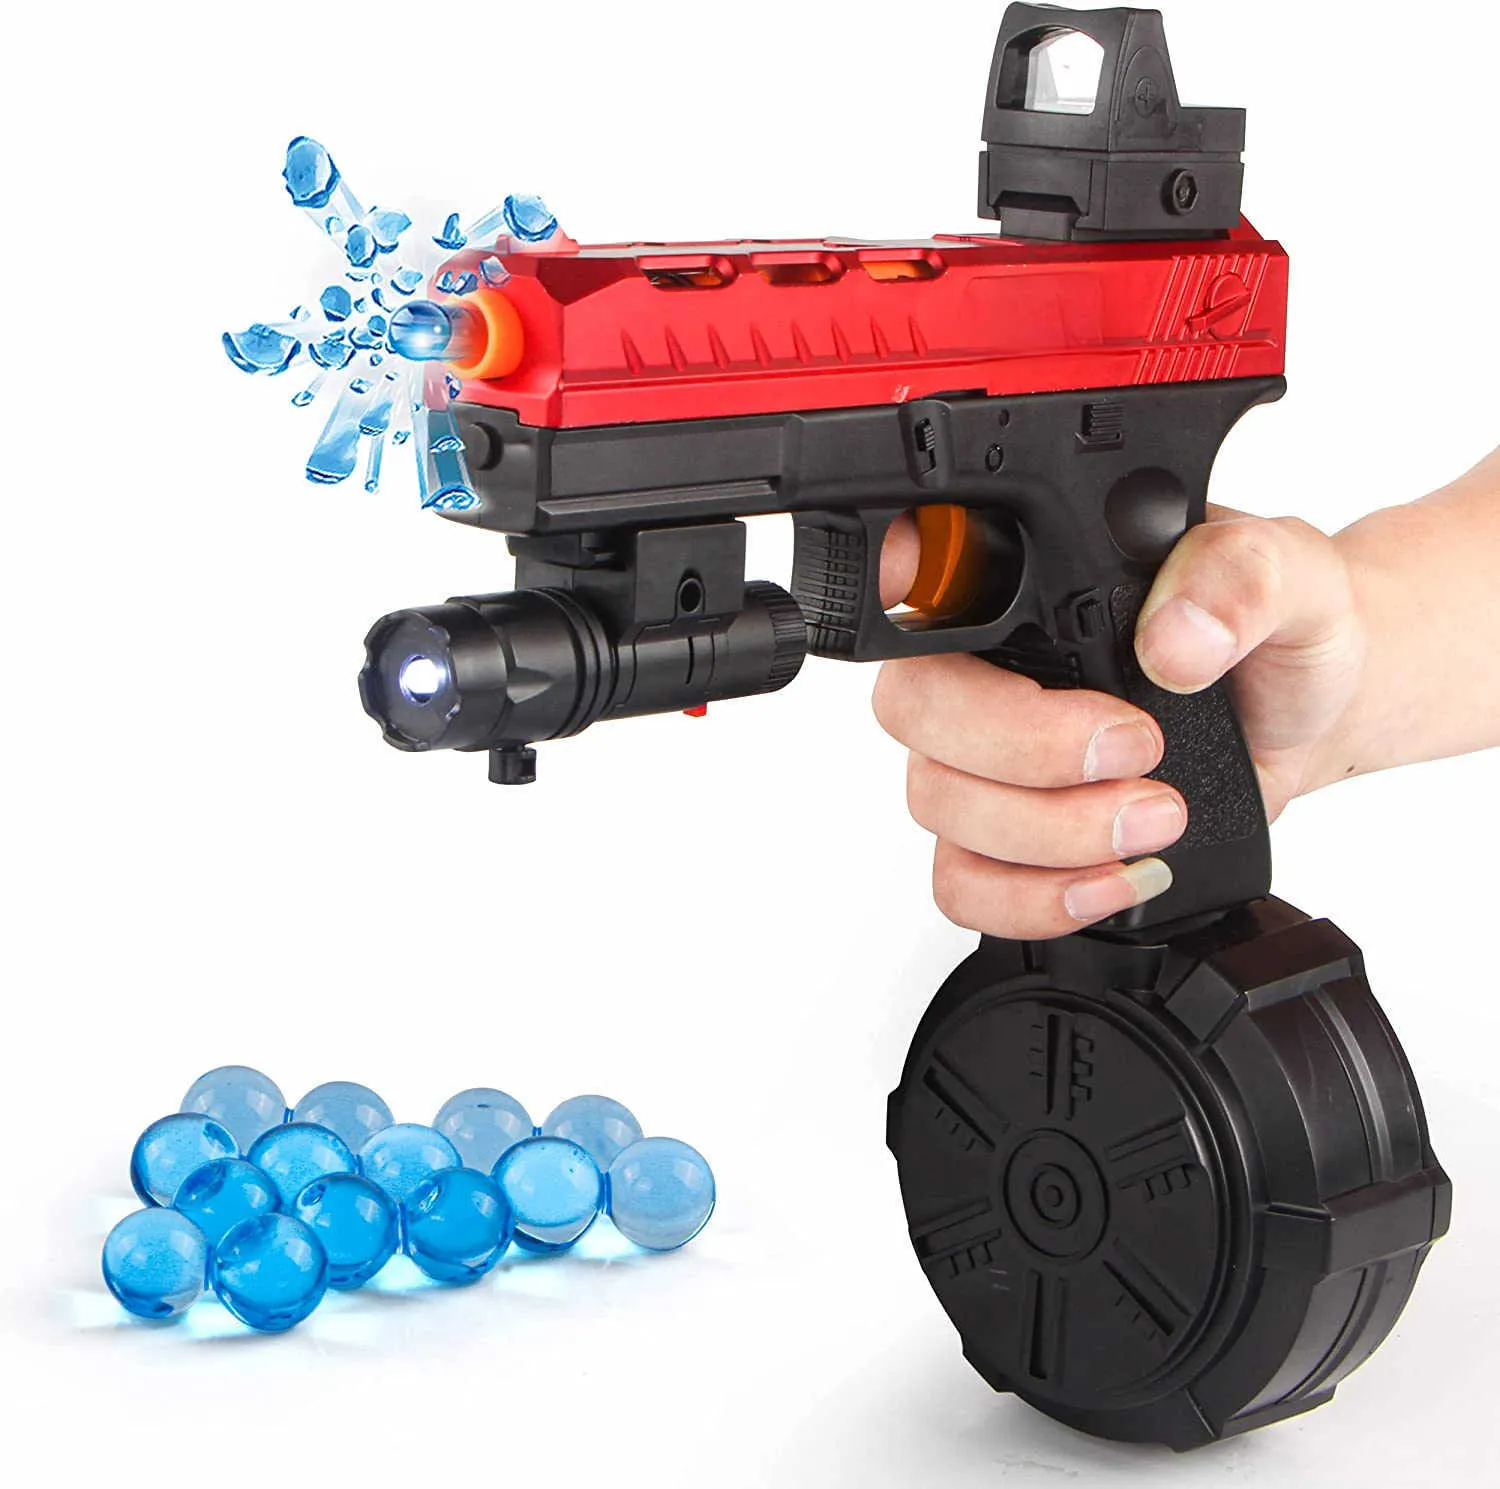 Kum Oyun Su Eğlence 2 in 1 Glock Jel Blaster Elektrikli Boncuk Oyuncak Tabanca Sıçrama Topu Yetişkinler Çocuklar Için Airsoft Pistola Açık Oyun Tabanca Z0523